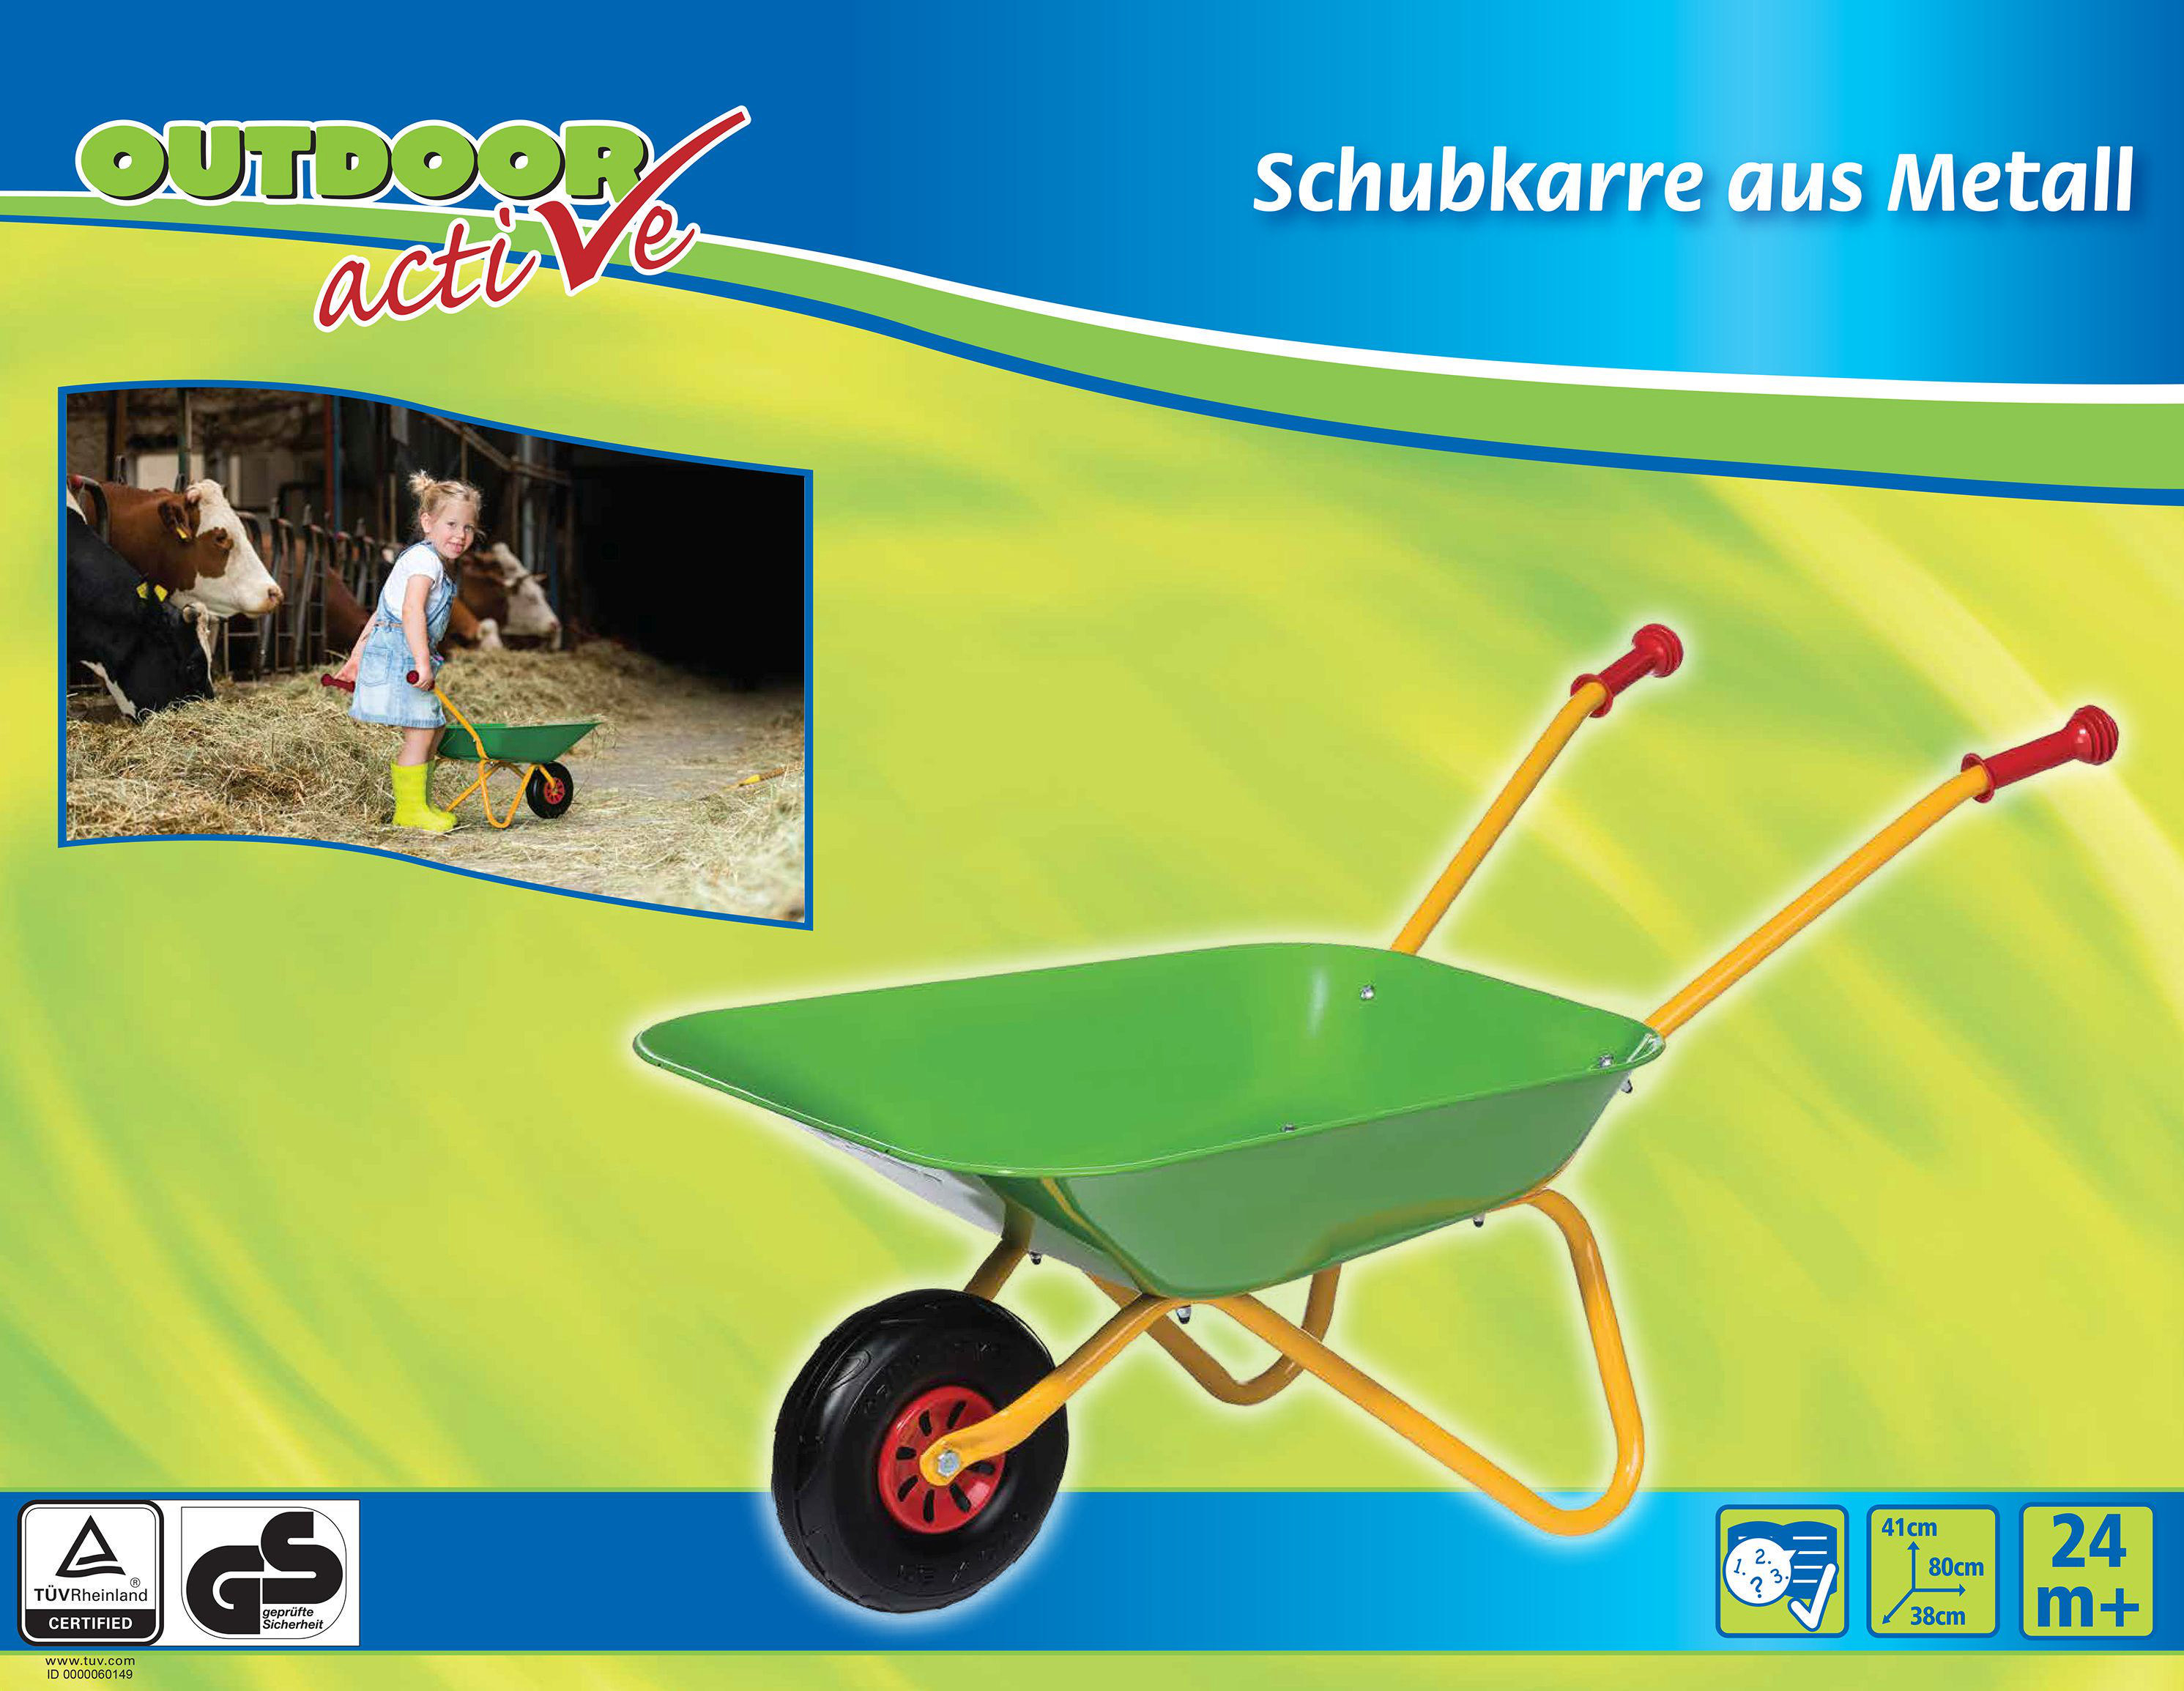 OUTDOOR ACTIVE Outdoor Active Kinderschubkarre Schubkarre-Metall,grün/gelb Grün/Gelb